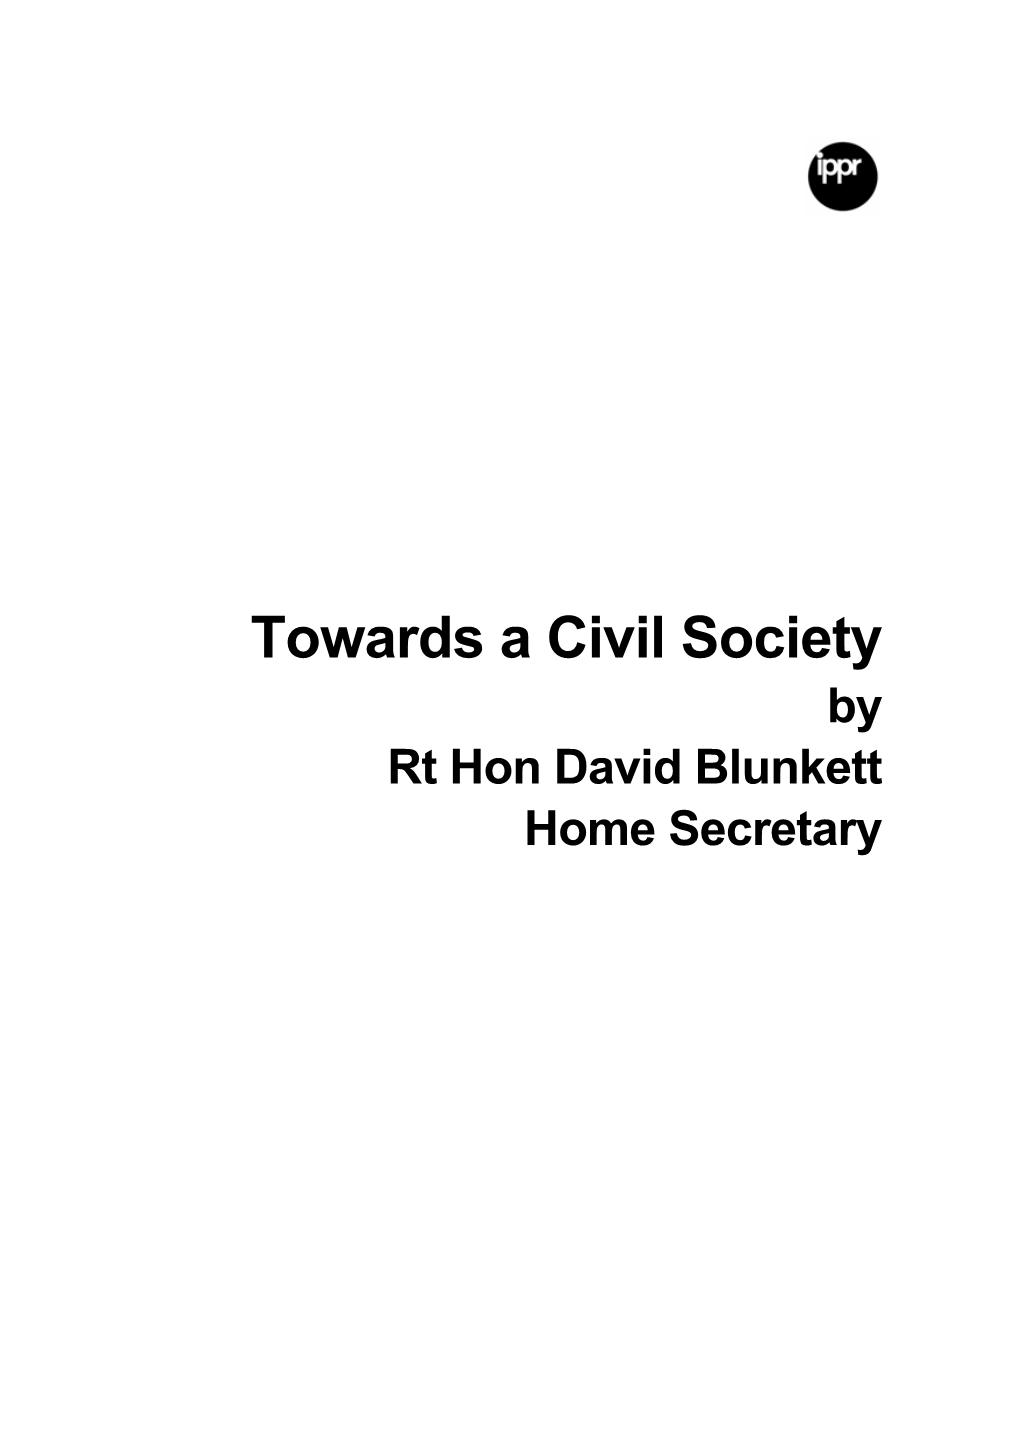 Towards a Civil Society by Rt Hon David Blunkett Home Secretary Rt Hon David Blunkett MP Is the Home Secretary